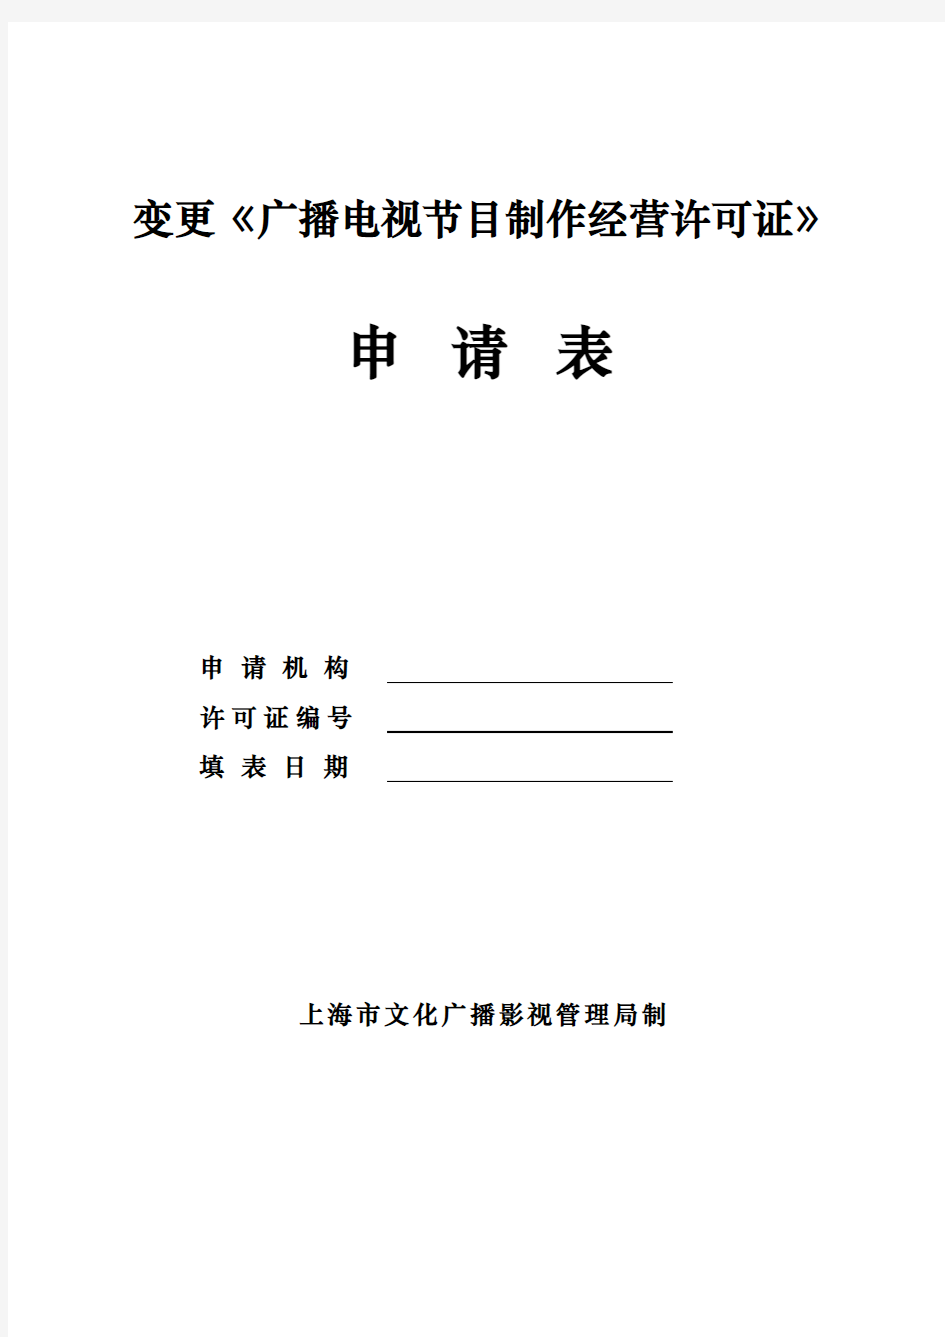 变更《广播电视节目制作经营许可证》申请表(上海市)